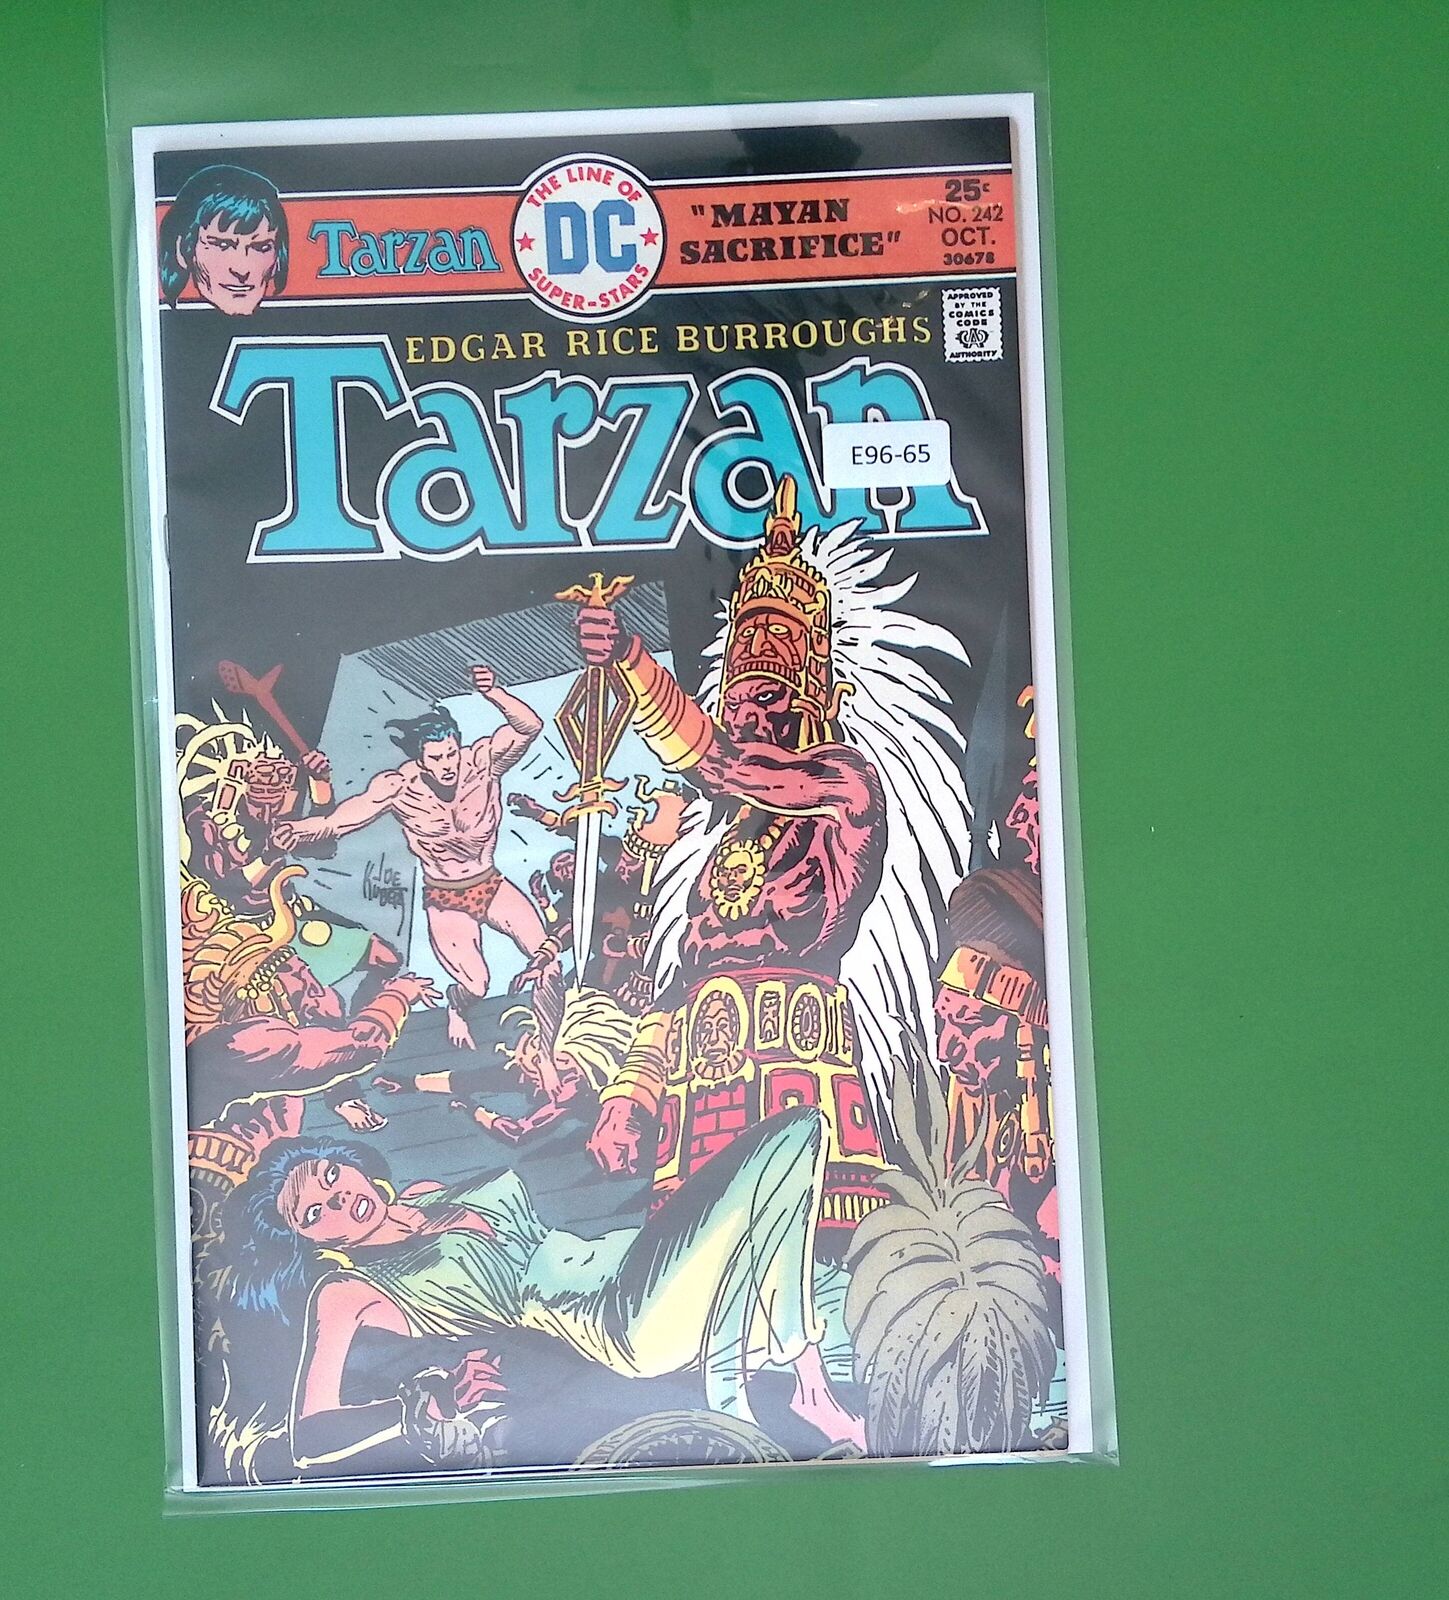 TARZAN #242 VOL. 1 HIGH GRADE DC COMIC BOOK E96-65